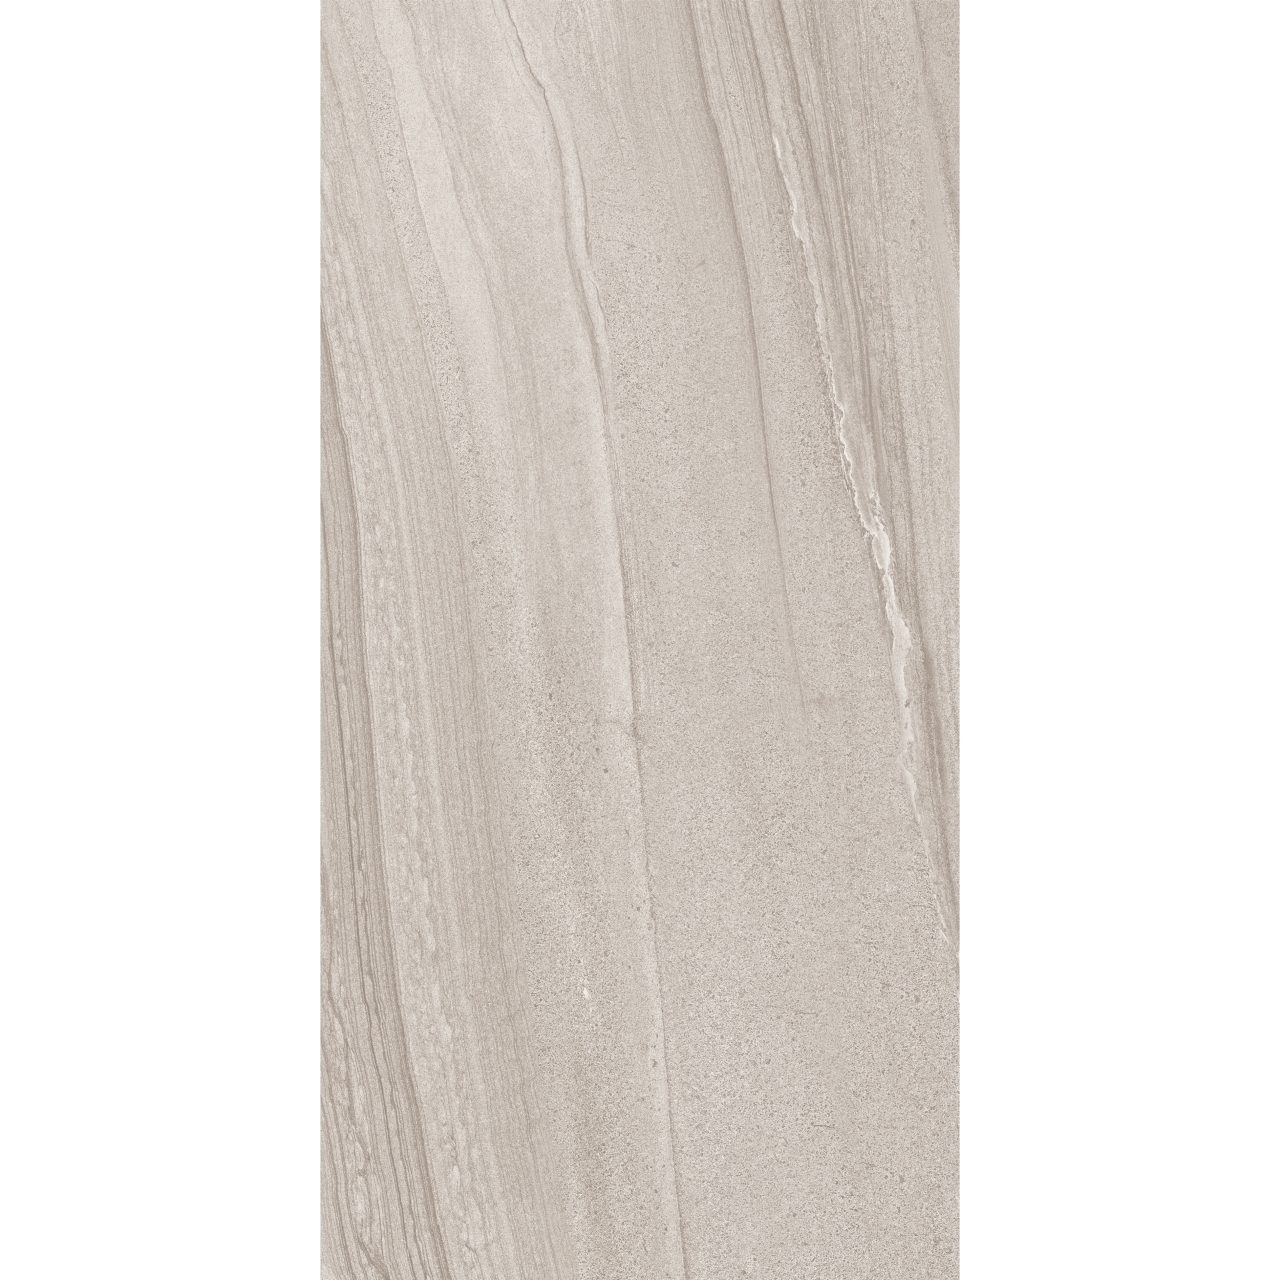 Кварц виниловый ламинат с подложкой Moduleo LayRed 55 Jersey Stone 46913